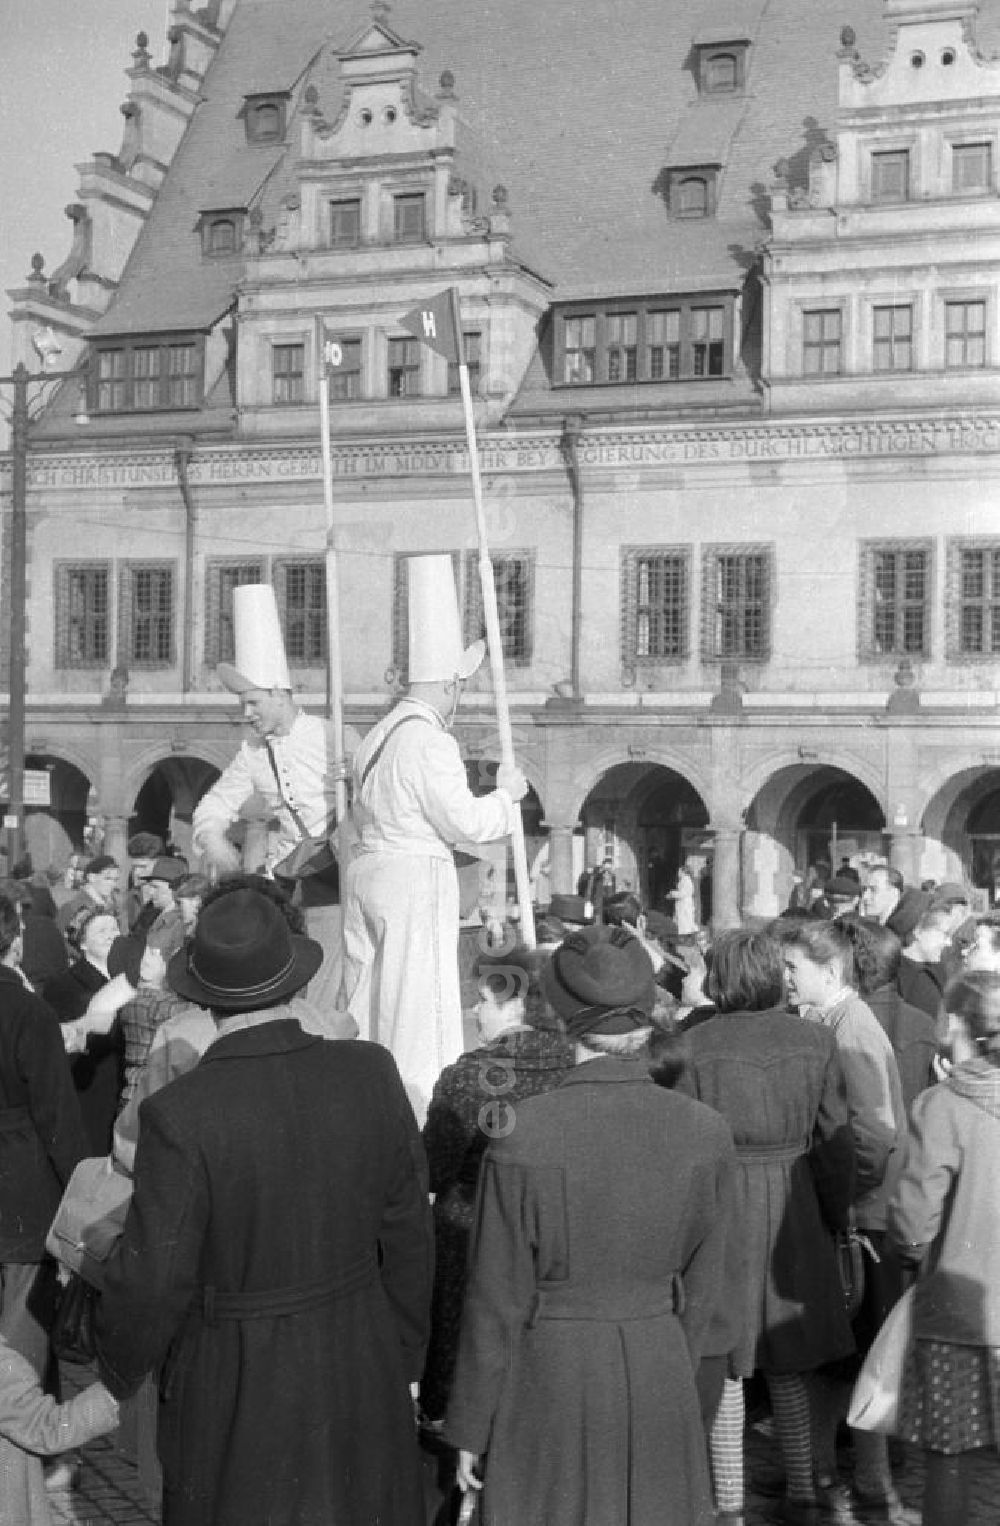 GDR image archive: Leipzig - Zwei Männer als Vertreter der HO / Handelsorganisation machen eine Werbeaktion auf dem Markt in Leipzig. Um die Männer hat sich eine Menschenmenge versammelt. Im Hintergrund ist die Front-Fassade des Alten Rathaus zu sehen. Die HO war ein staatlich geführtes Einzelhandelsunternehmen, welches 1947 gegründet wurde.